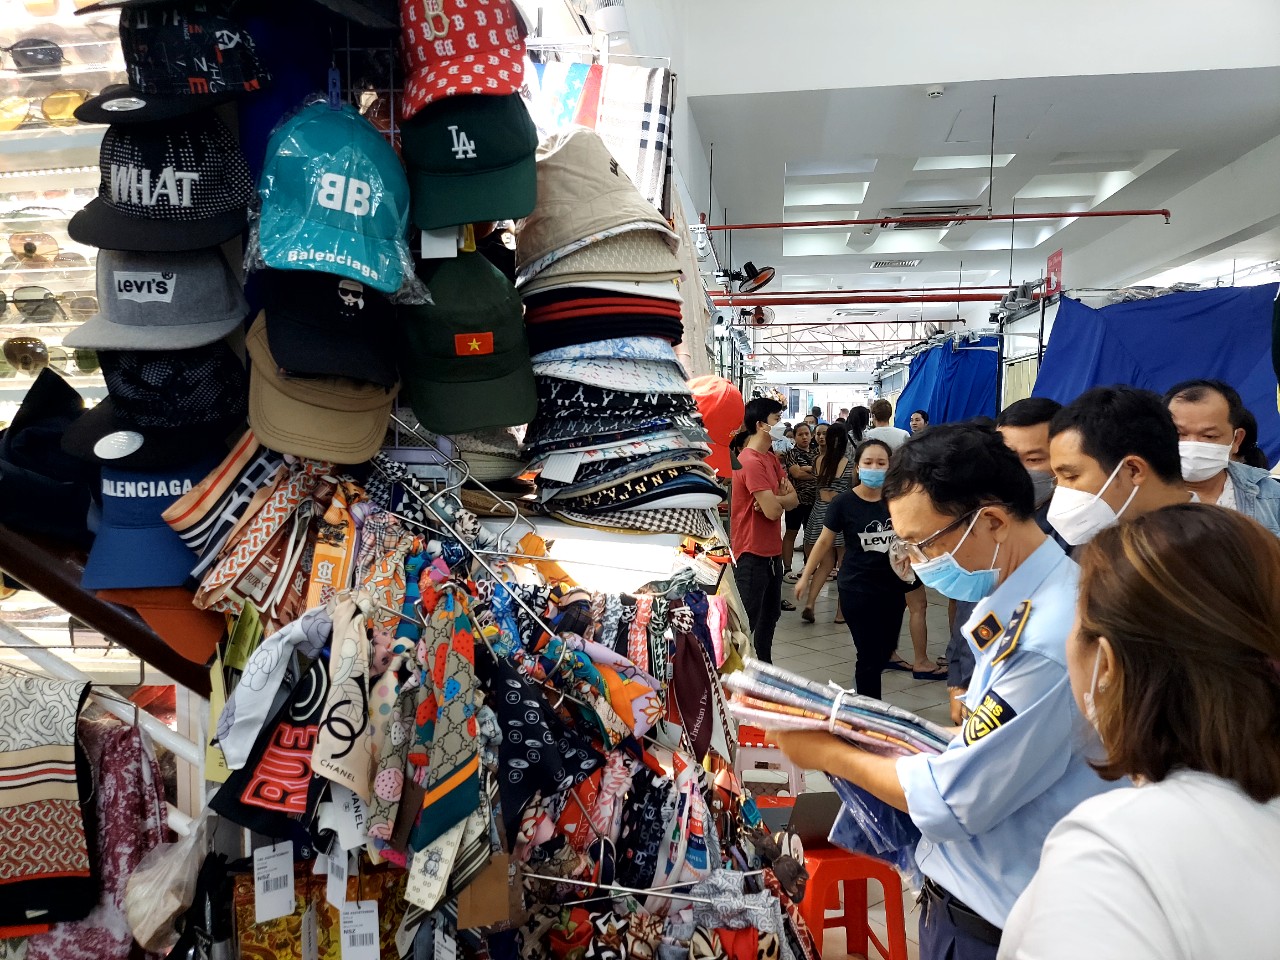 Cơn khát hàng xa xỉ lên cao nhưng Chanel Hàn Quốc vẫn quyết áp dụng quy tắc  mỗi người mua một túi